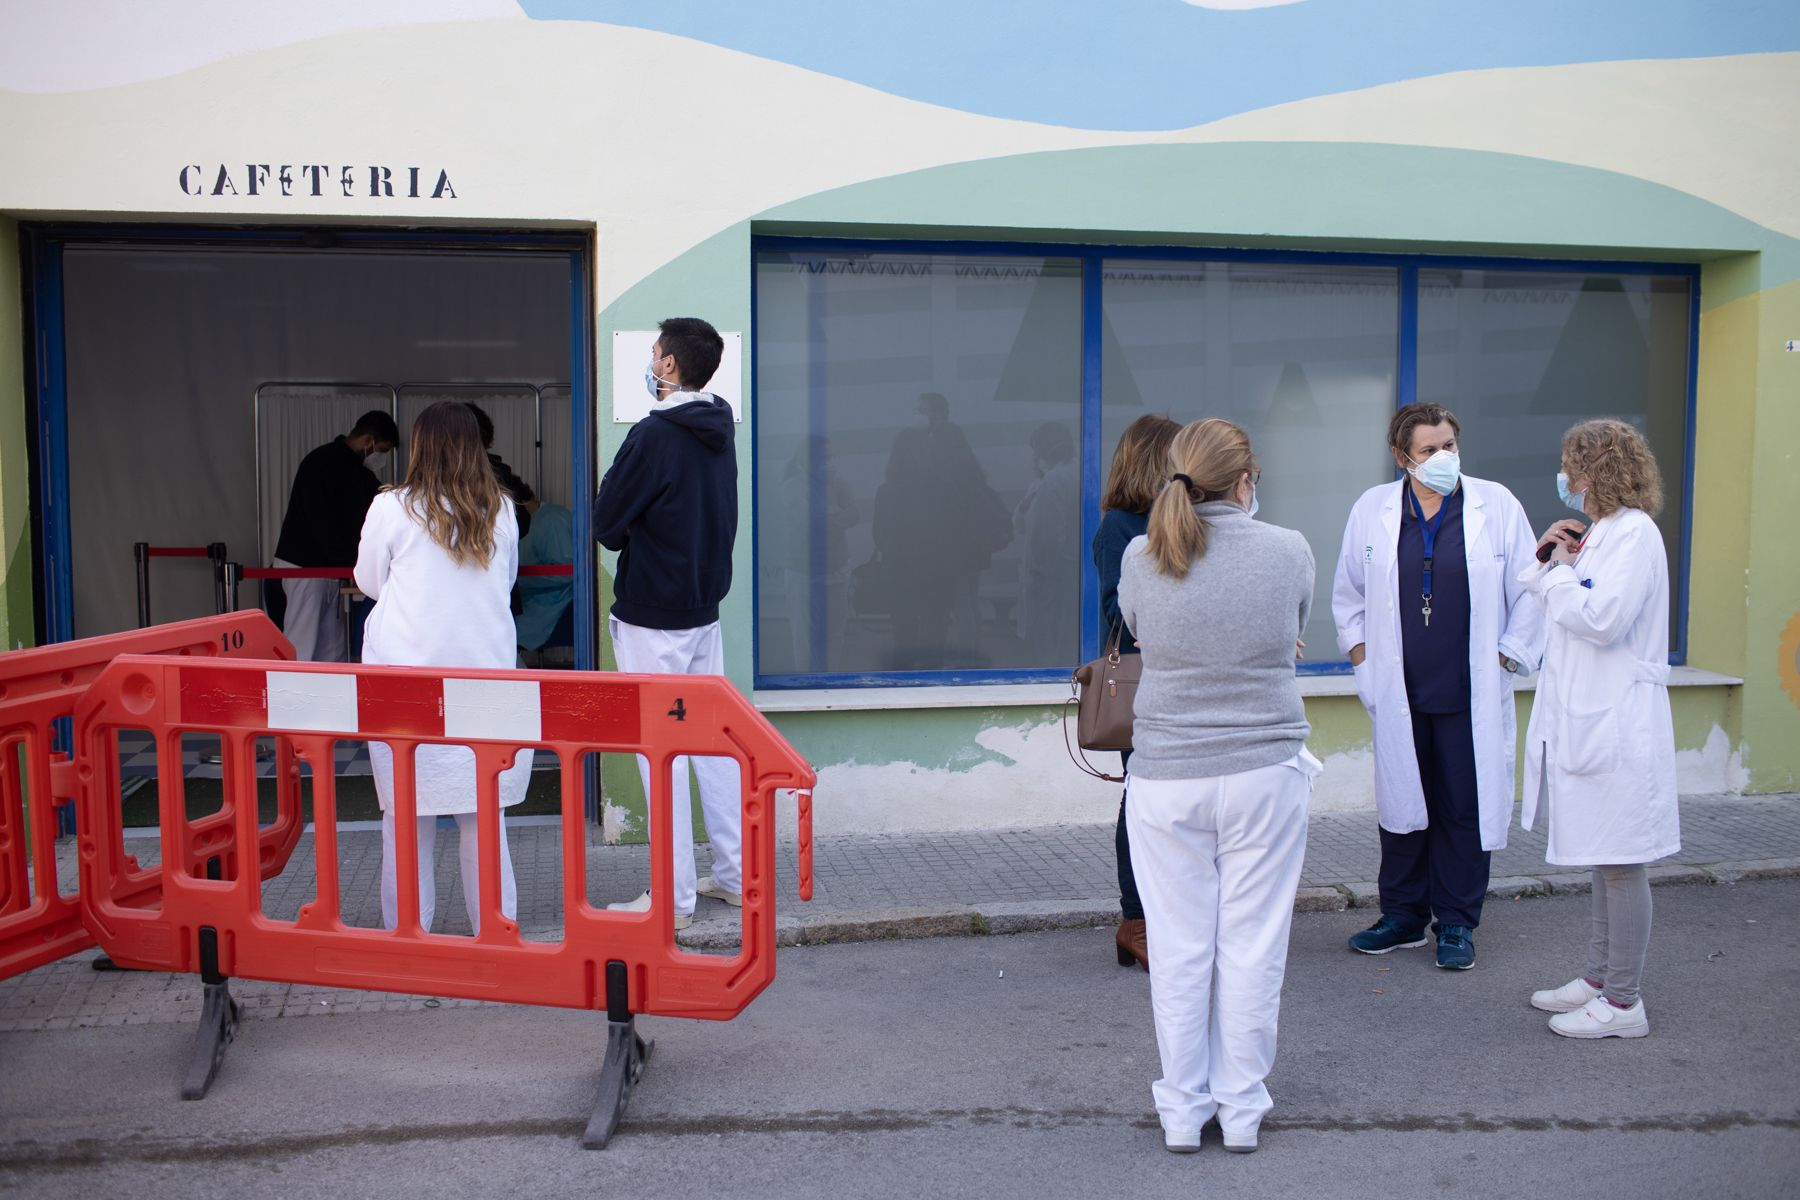 Andalucía no levantará todas las restricciones hasta que no haya vacunación masiva. En la imagen, sanitarios, aguardando para ser vacunados, en una imagen reciente.